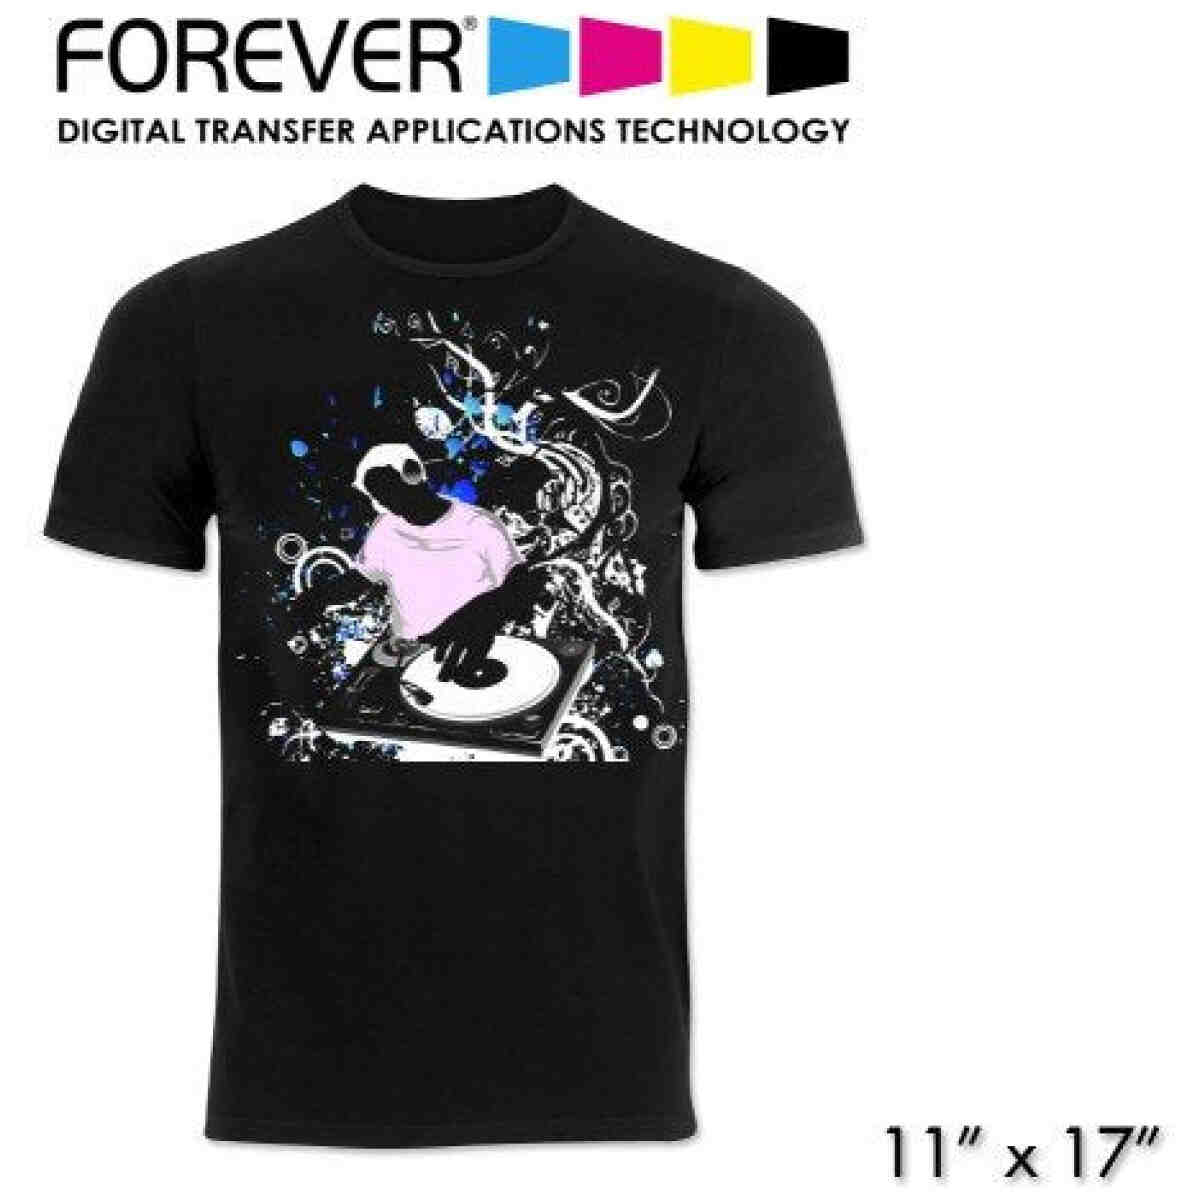 Forever Laser Dark - 11 X 17 FOREVER®